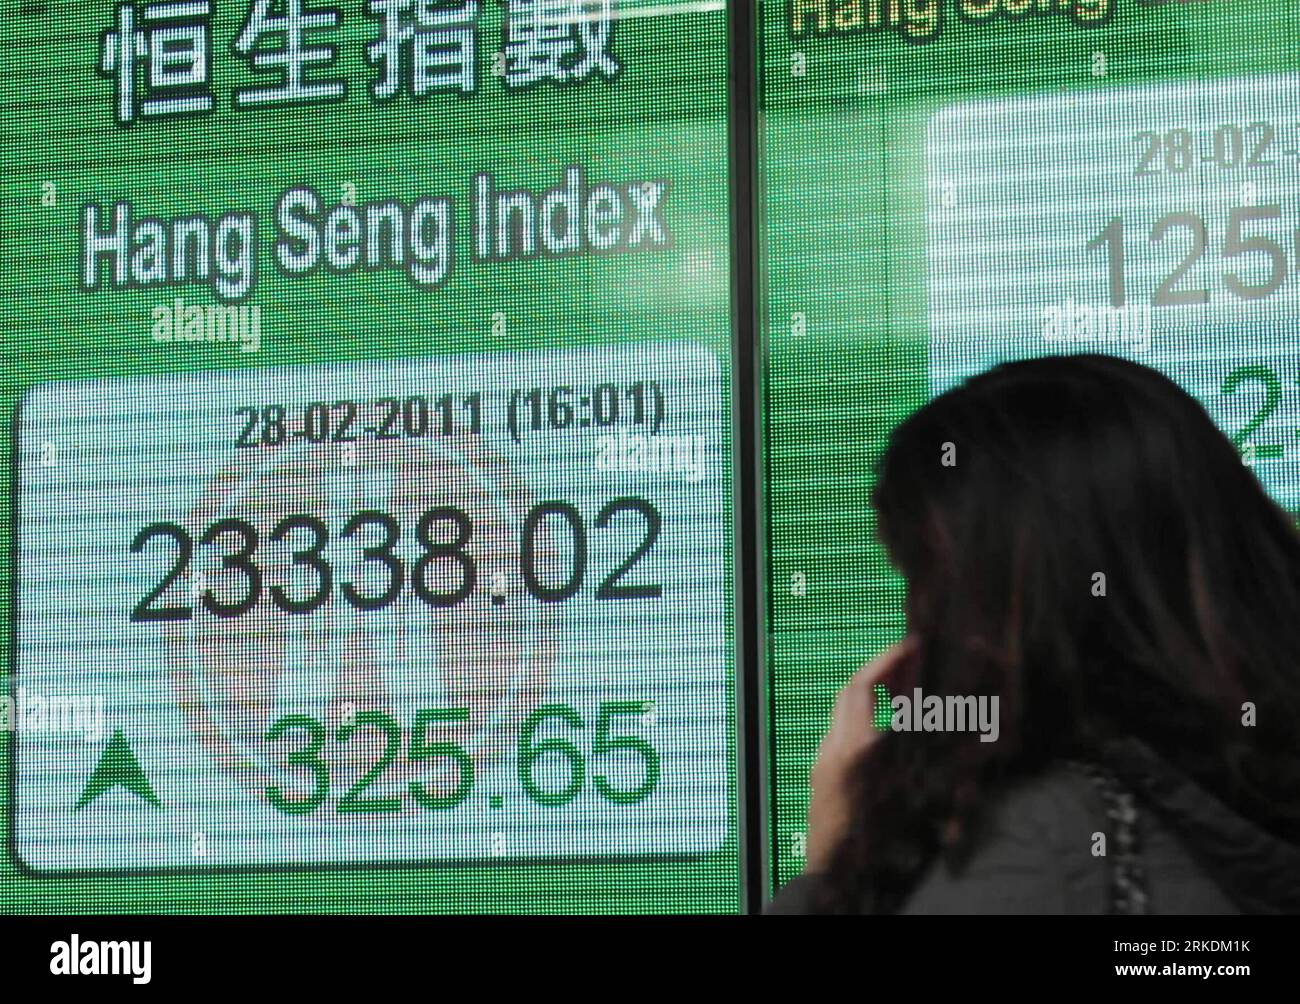 Bildnummer: 54965780  Datum: 28.02.2011  Copyright: imago/Xinhua (110228) -- HONG KONG, Feb. 28, 2011 (Xinhua) -- A pedestrian walks past an electronic panel displaying the Hang Seng Index in Hong Kong, south China, Feb. 28, 2011. Hong Kong stocks closed up on Monday, with the weighted index rising 325.65 points, or 1.42 percent, to end at 23,338.02. (Xinhua/Wong Pun Keung) (ljh) PUBLICATIONxNOTxINxCHN Wirtschaft kbdig xsk 2011 quer  o0 Börse, Börsenkurs, Aktienkurs, Anstieg, HSI, Anzeige    Bildnummer 54965780 Date 28 02 2011 Copyright Imago XINHUA  Hong Kong Feb 28 2011 XINHUA a Pedestrian W Stock Photo